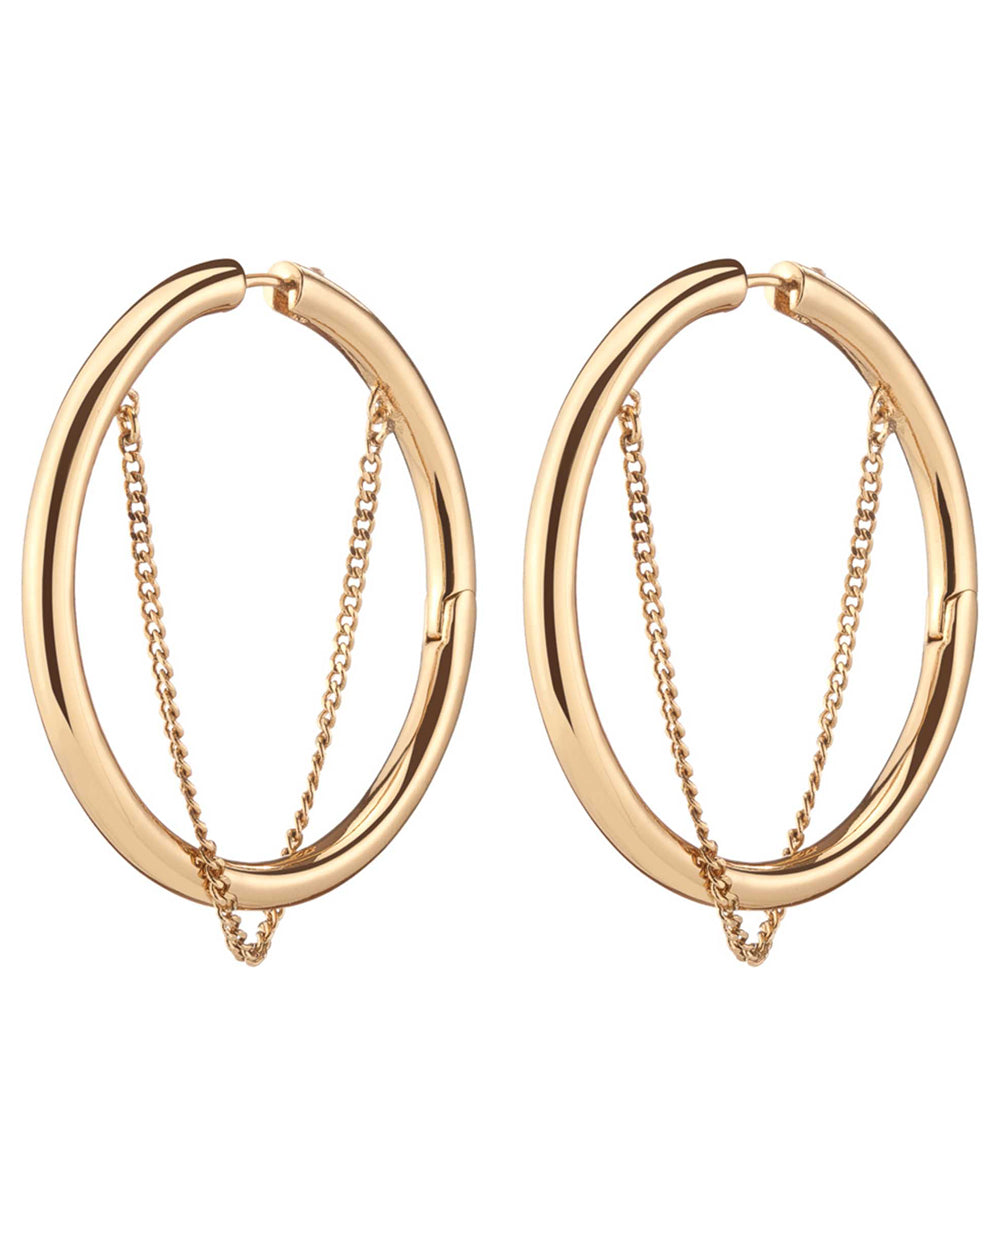 Gold Hanging Chain Riley Hoop Earrings